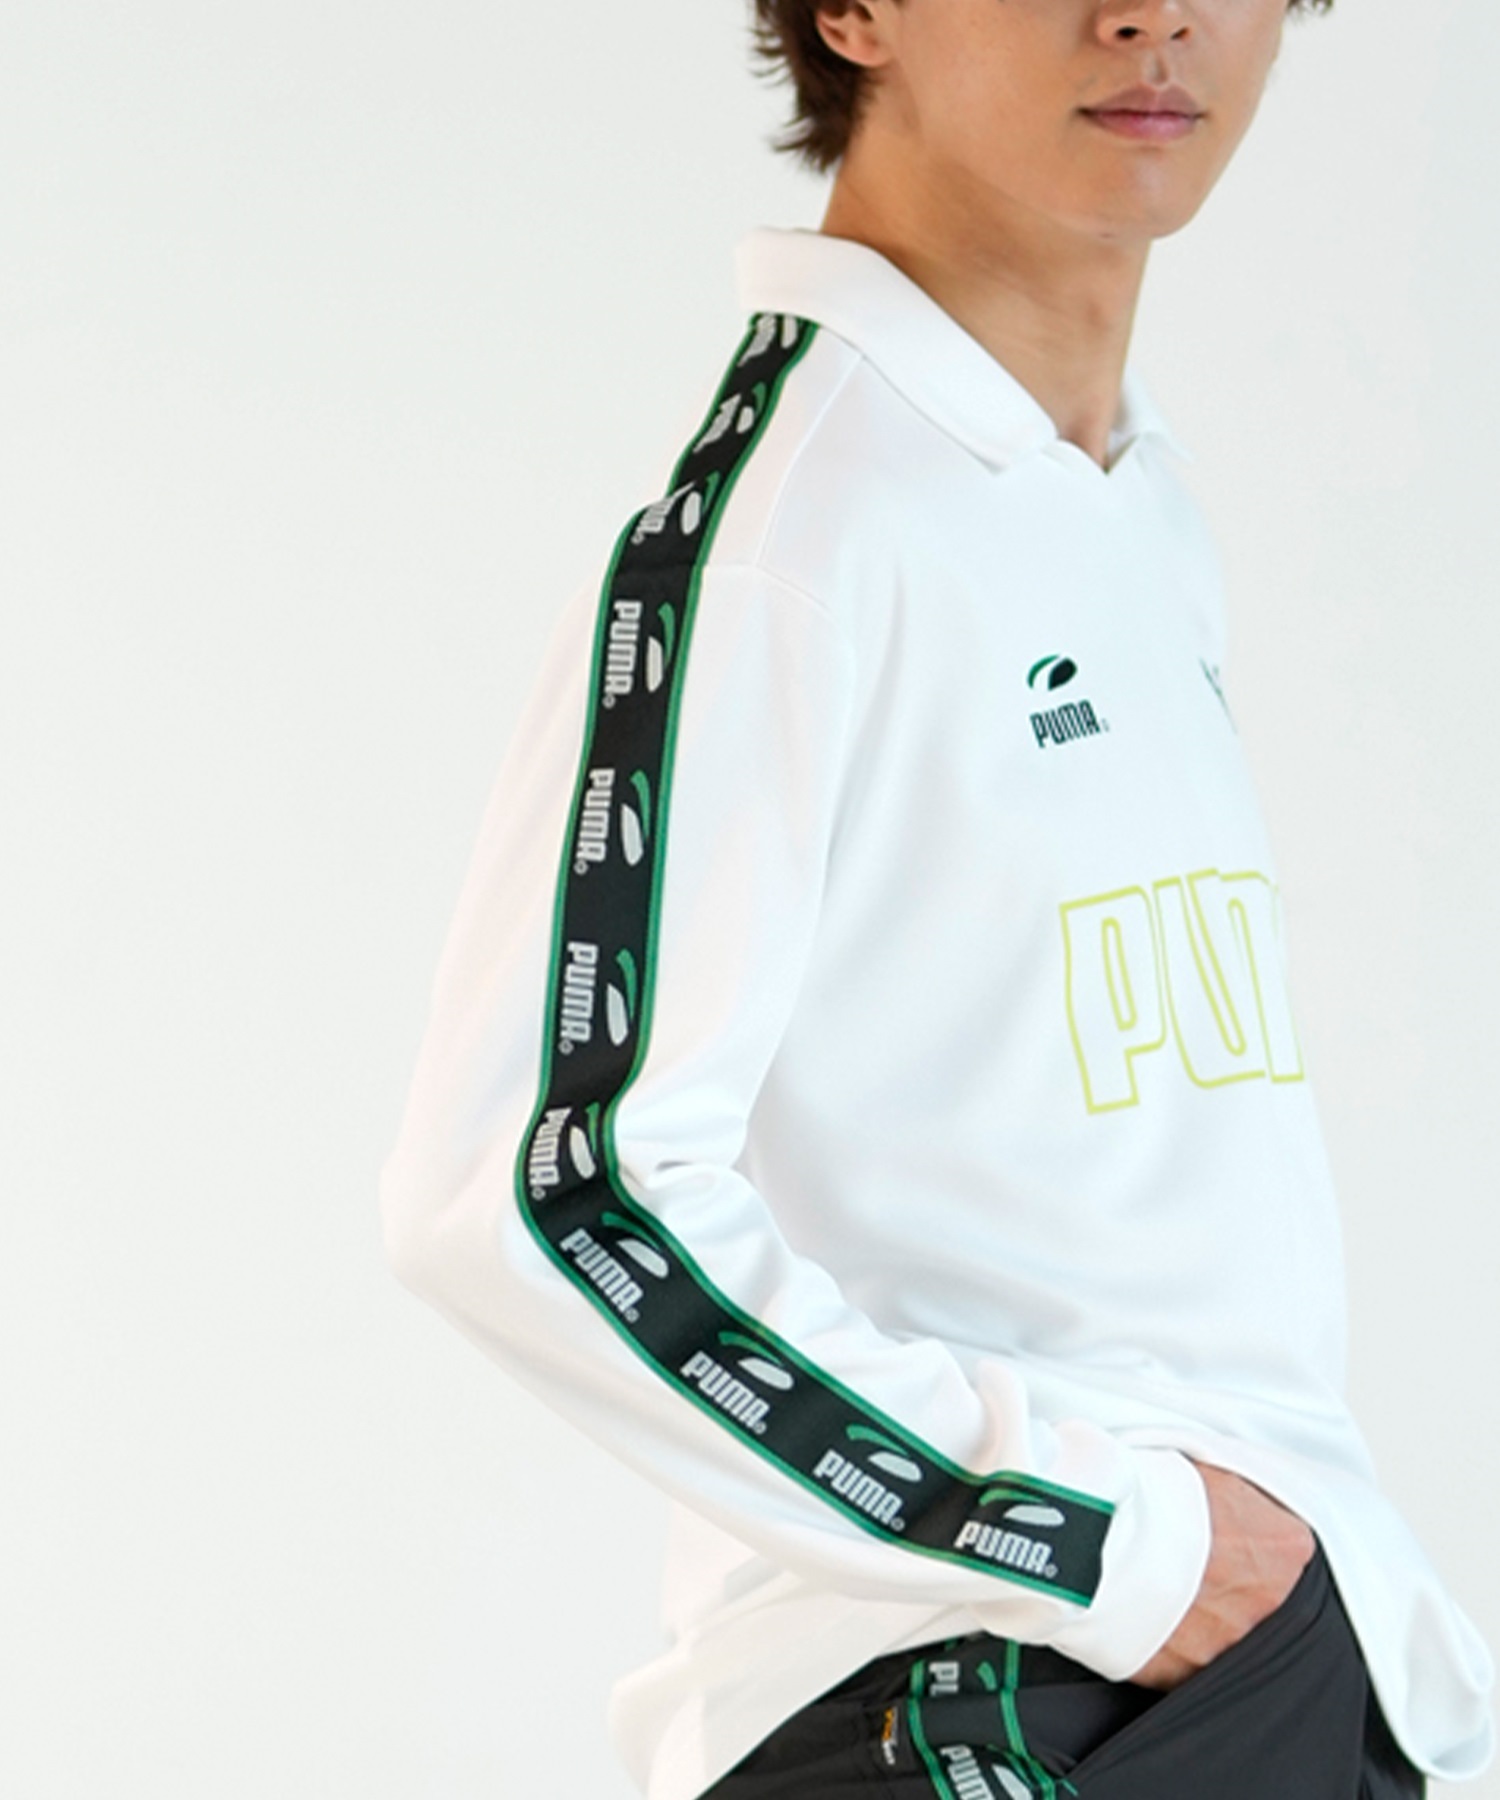 PUMA SKATEBOARDING プーマ スケートボーディング ゲームシャツ メンズ 長袖 Tシャツ ルーズシルエット 625691(17-M)